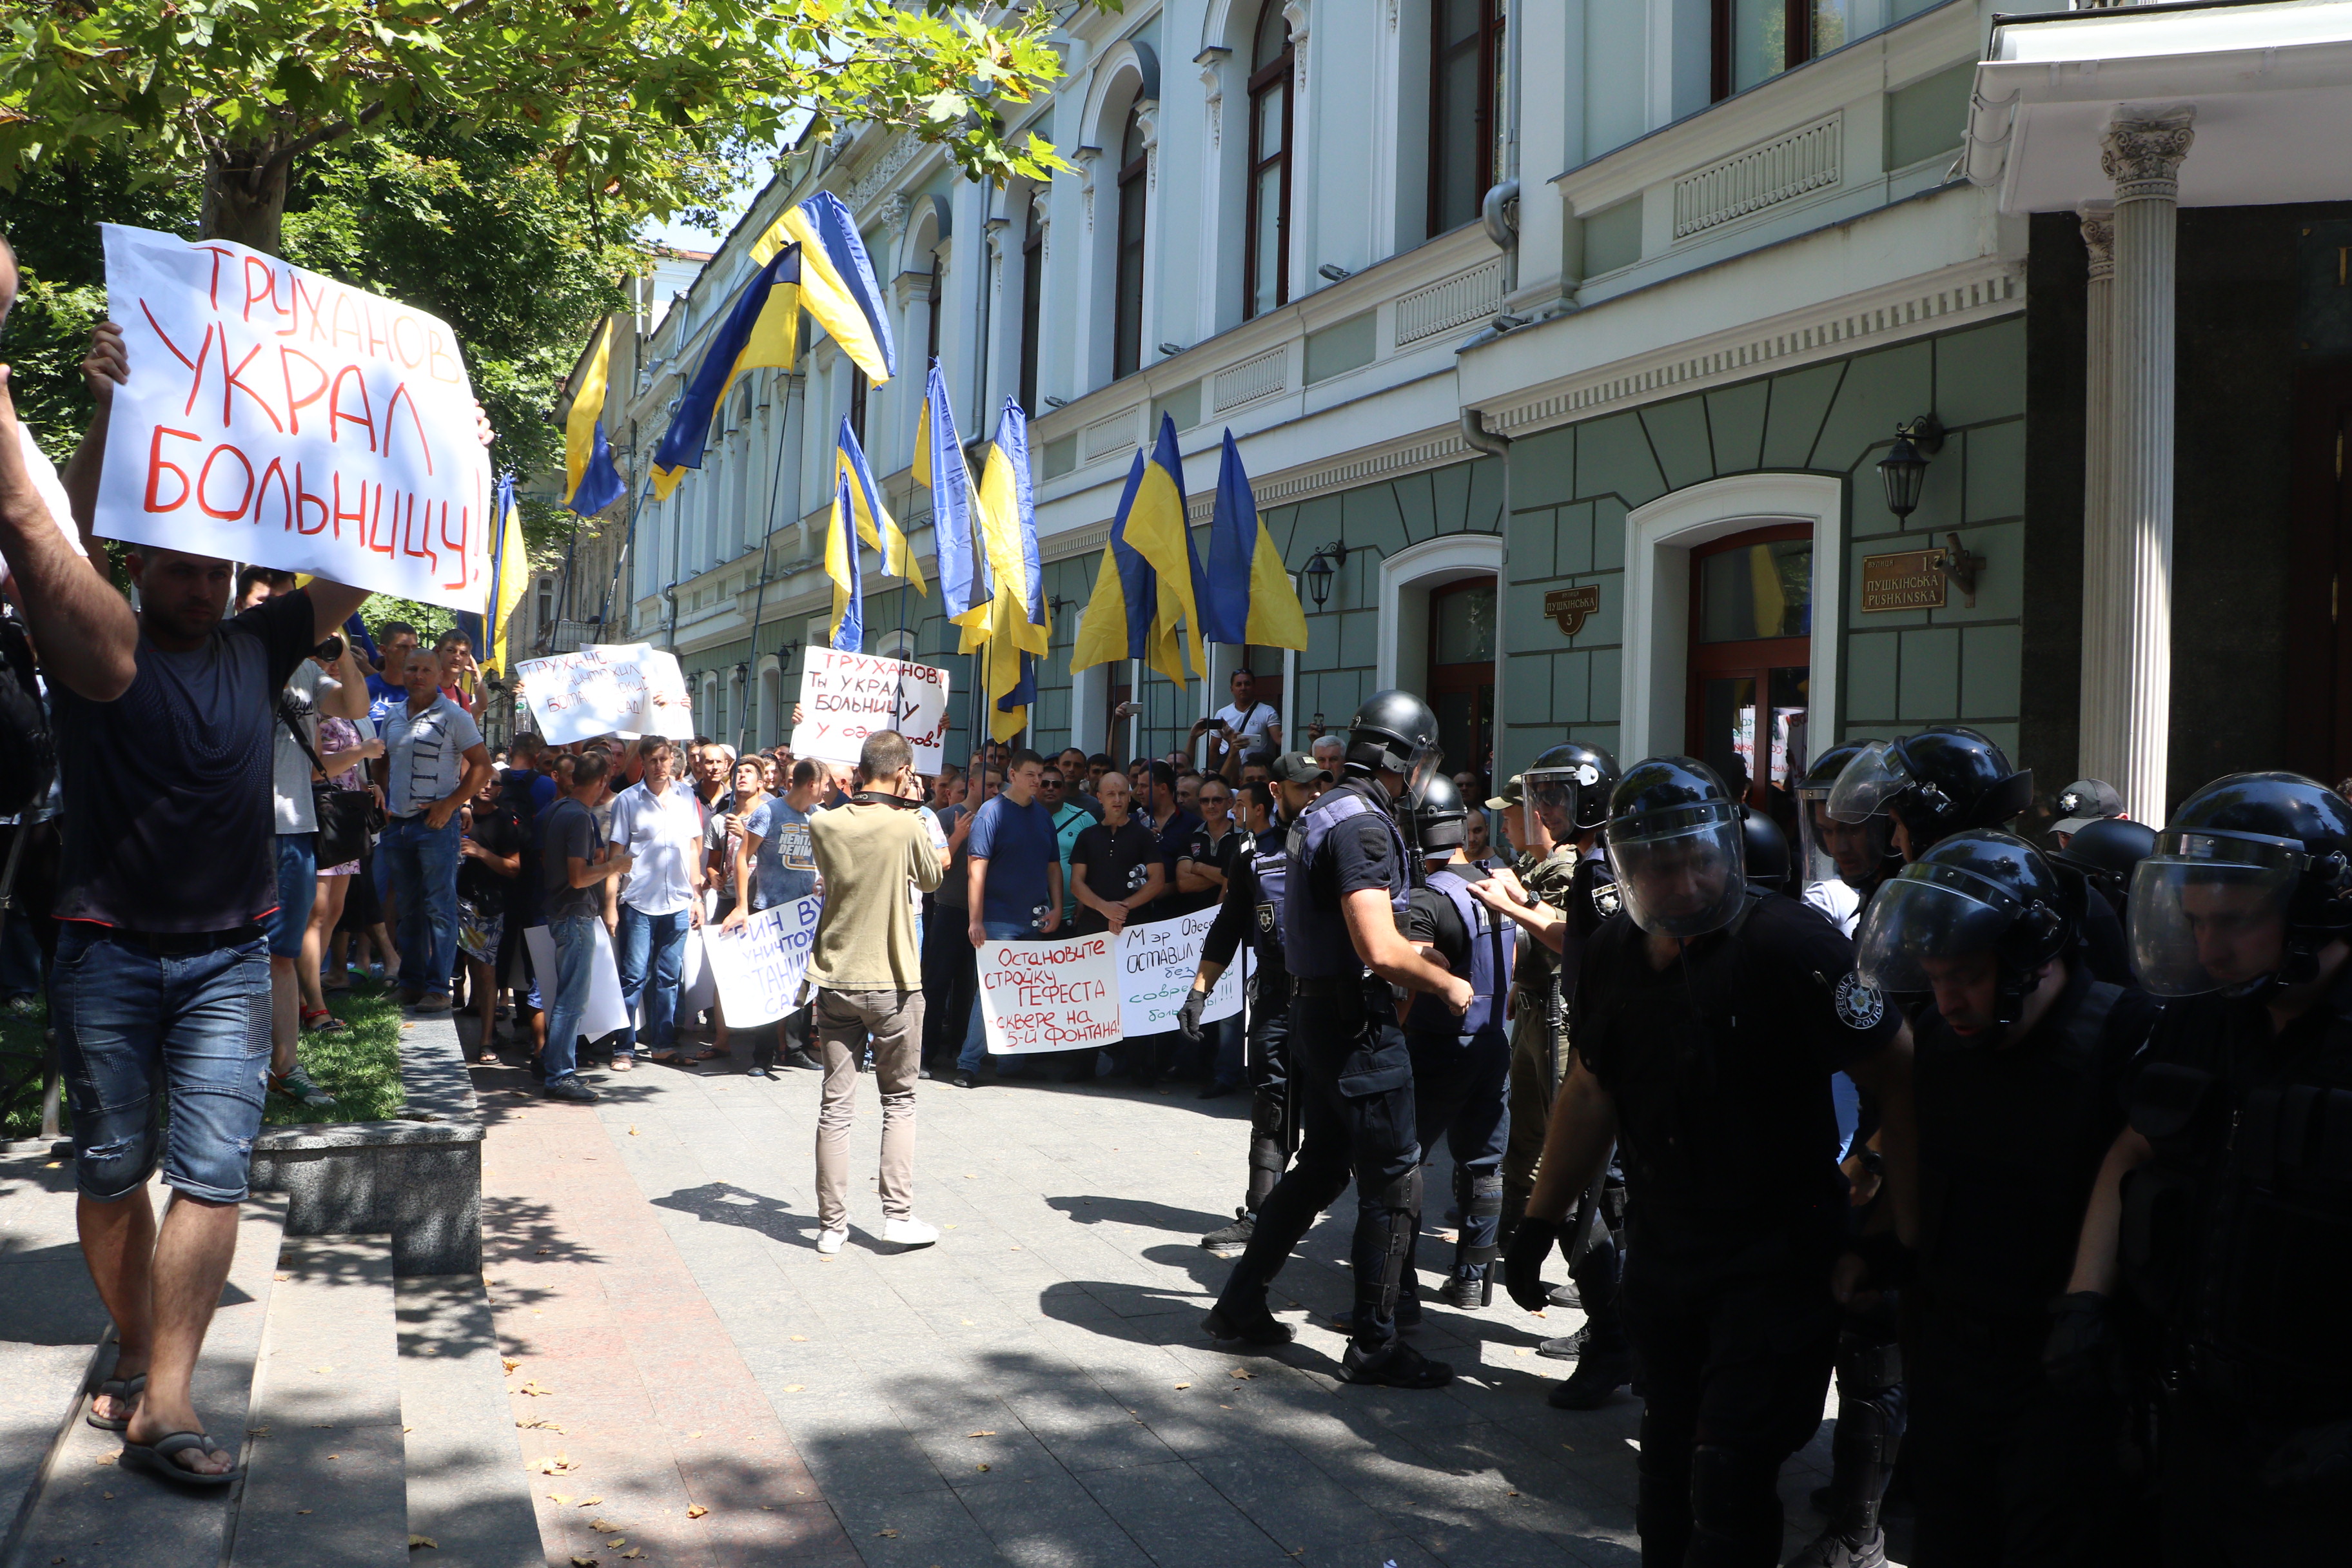  "Вибачте, нас дістало": в Одесі жителі вийшли на масштабний мітинг проти Труханова 